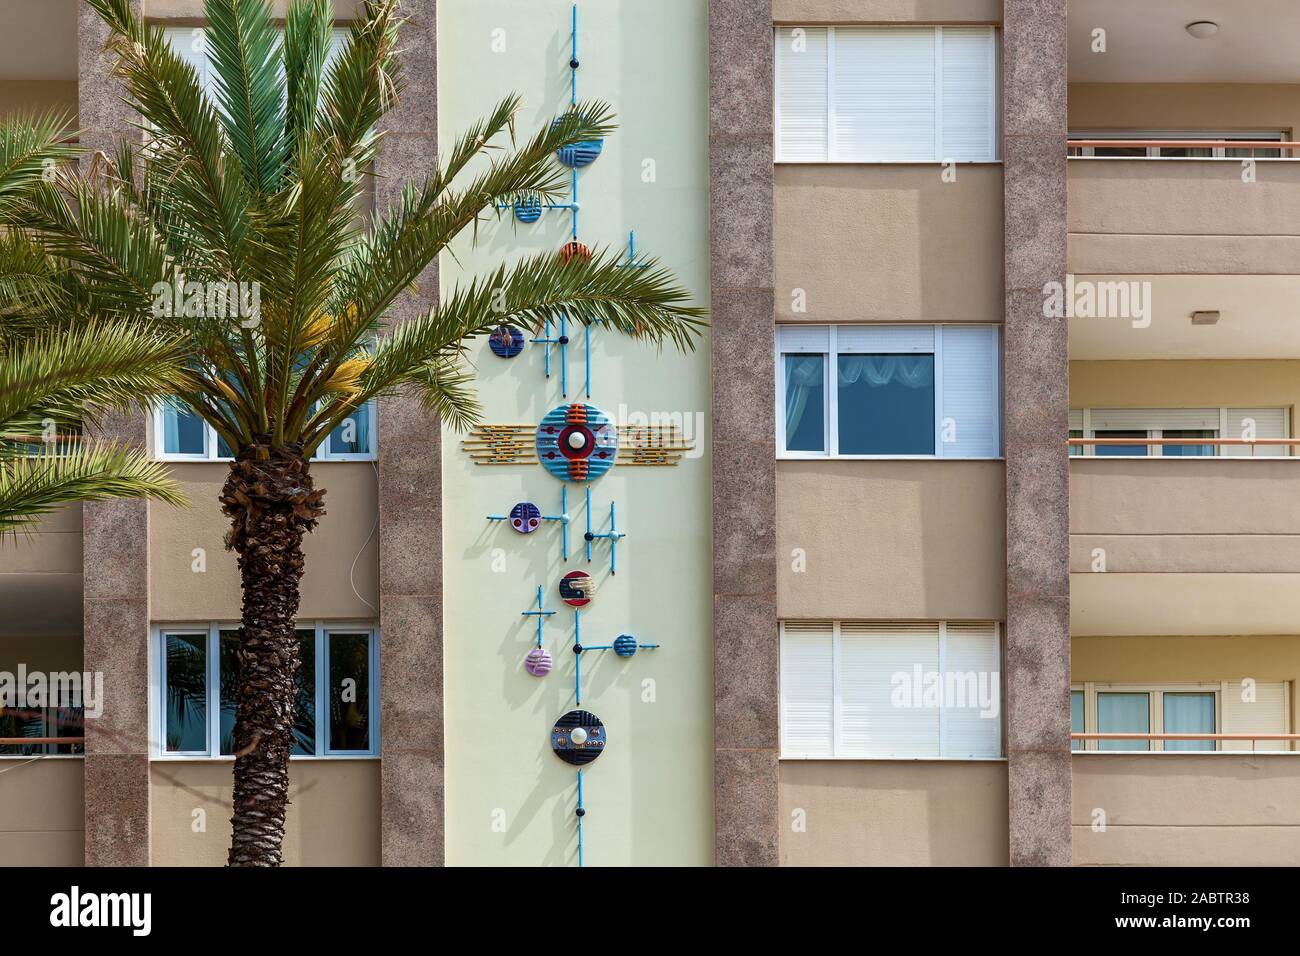 Photo en gros plan d'un mur décoré d'un immeuble résidentiel avec un ornement floral à côté d'un palmier, la Turquie. Banque D'Images